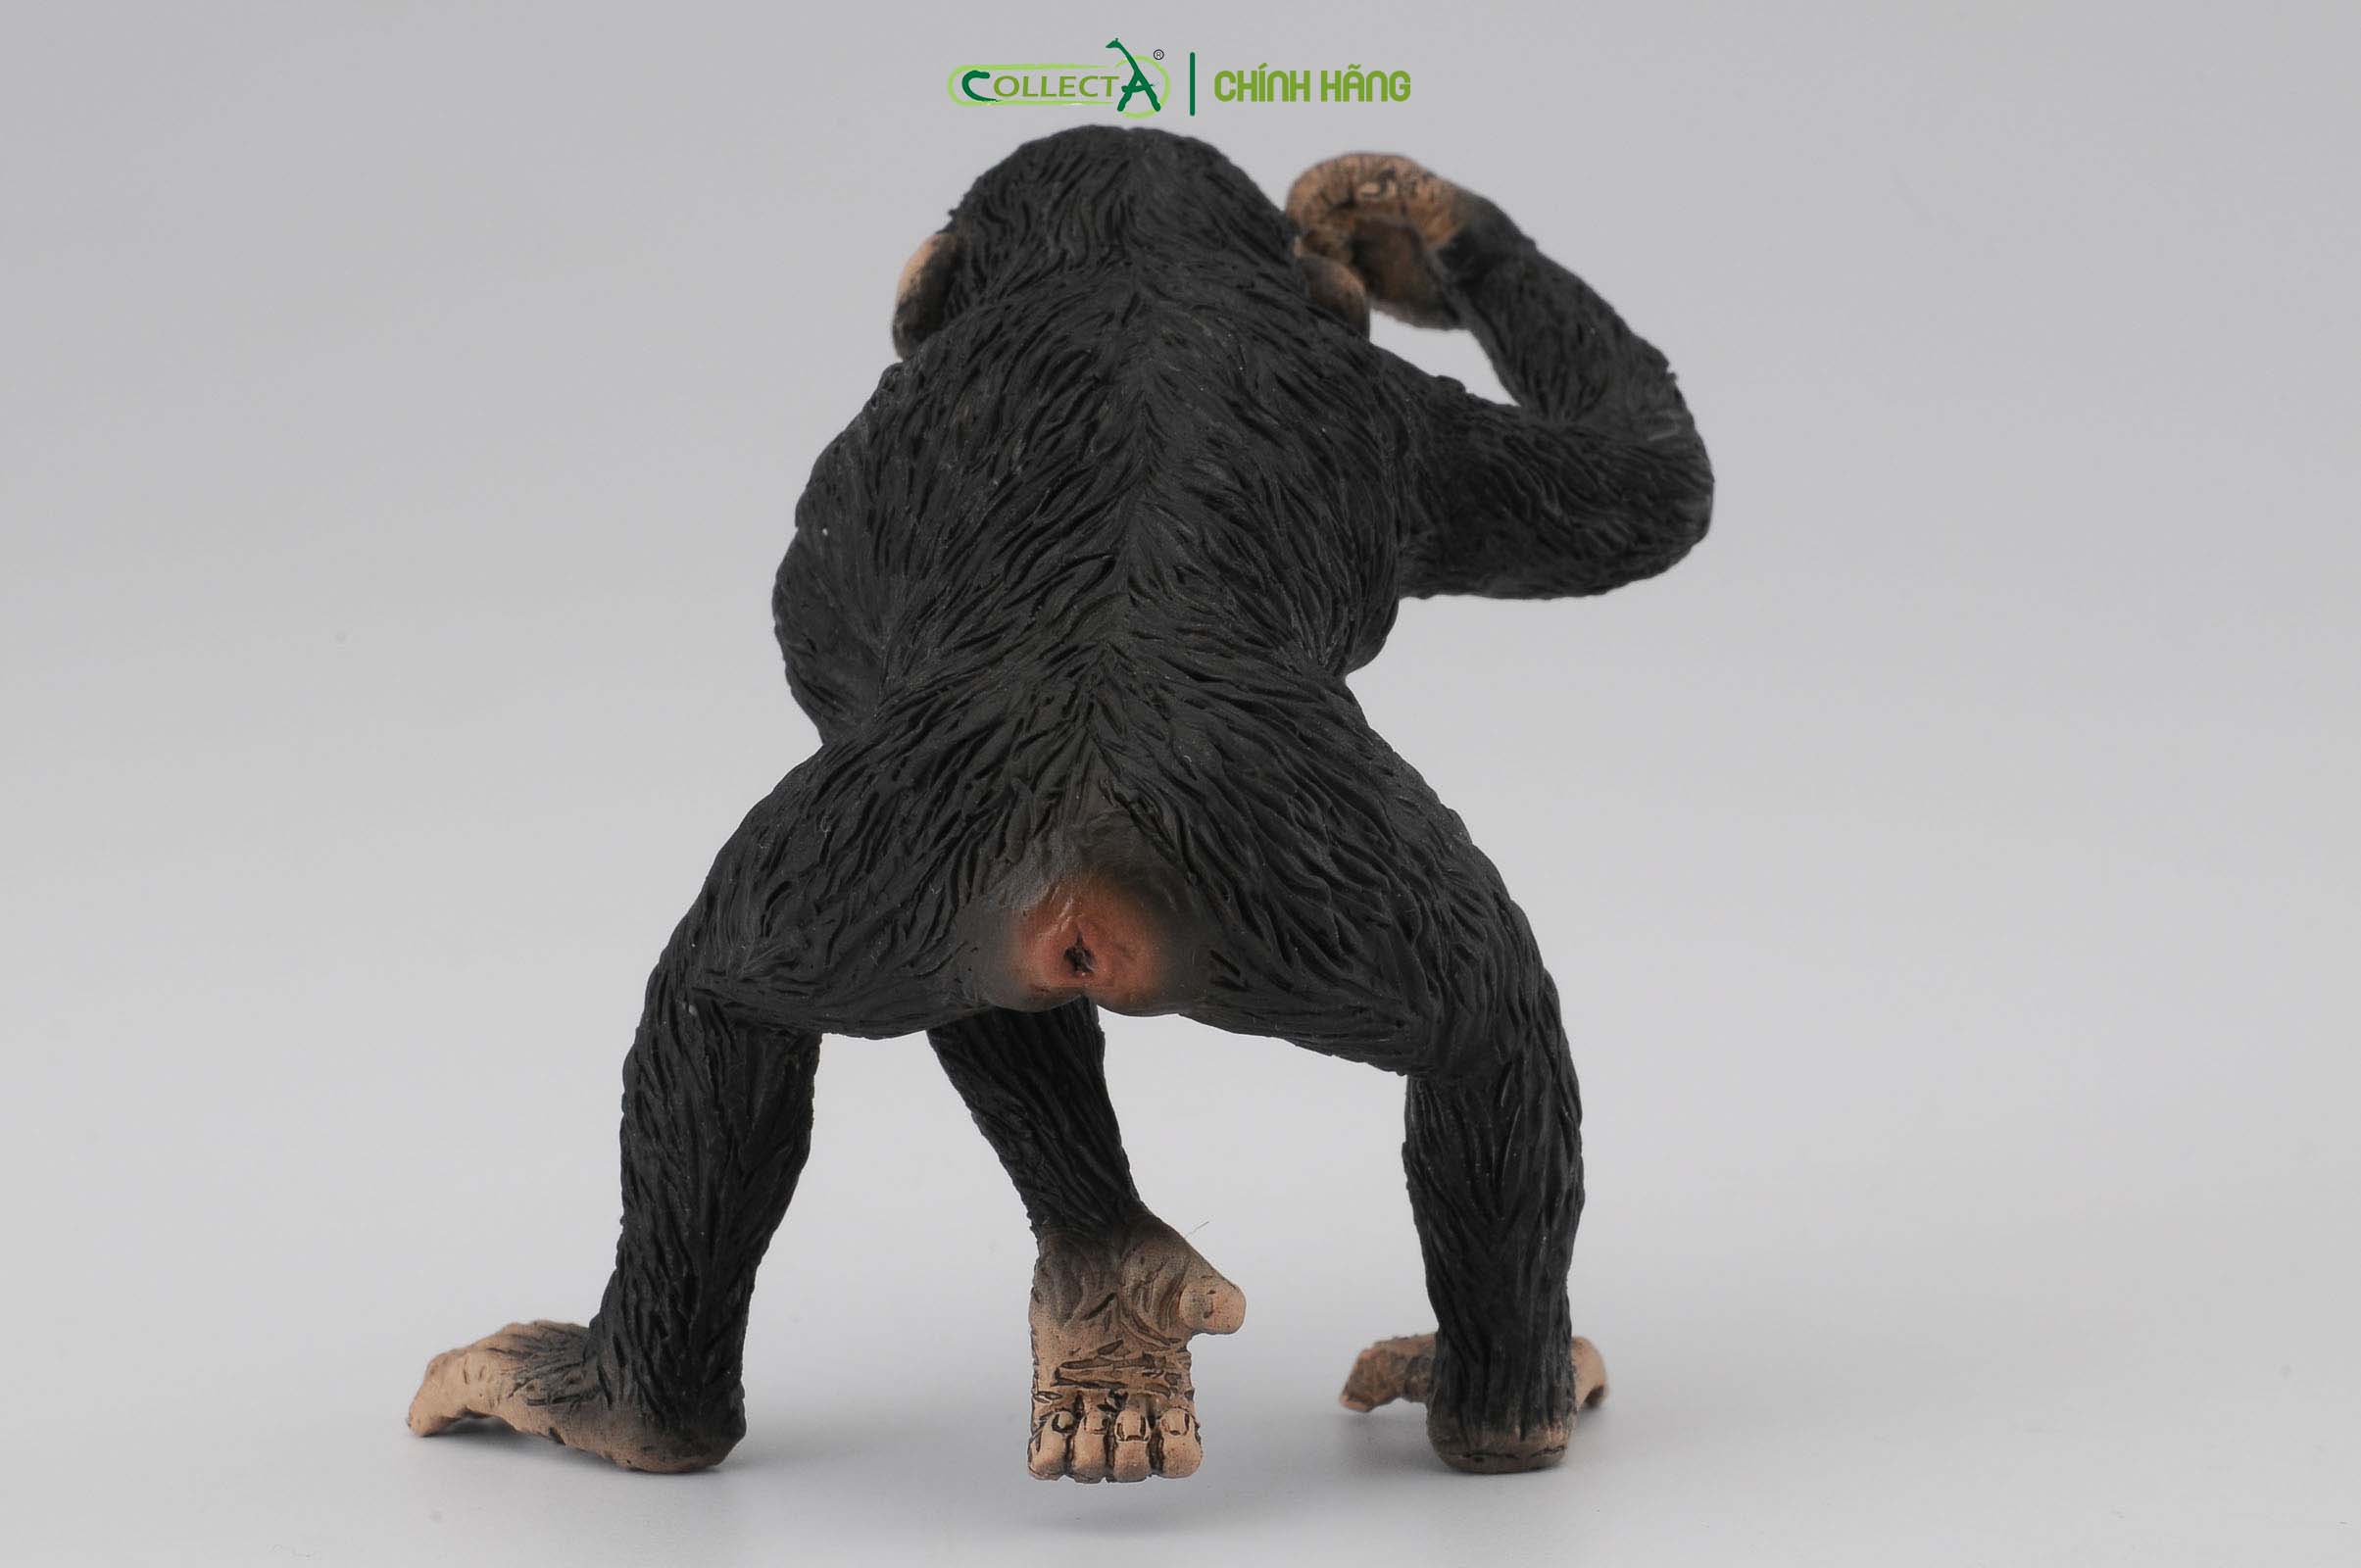 Mô hình thu nhỏ: Tinh Tinh bố - Chimpanzee Male, hiệu: CollectA, mã HS 9651031[88492] -  Chất liệu an toàn cho trẻ - Hàng chính hãng